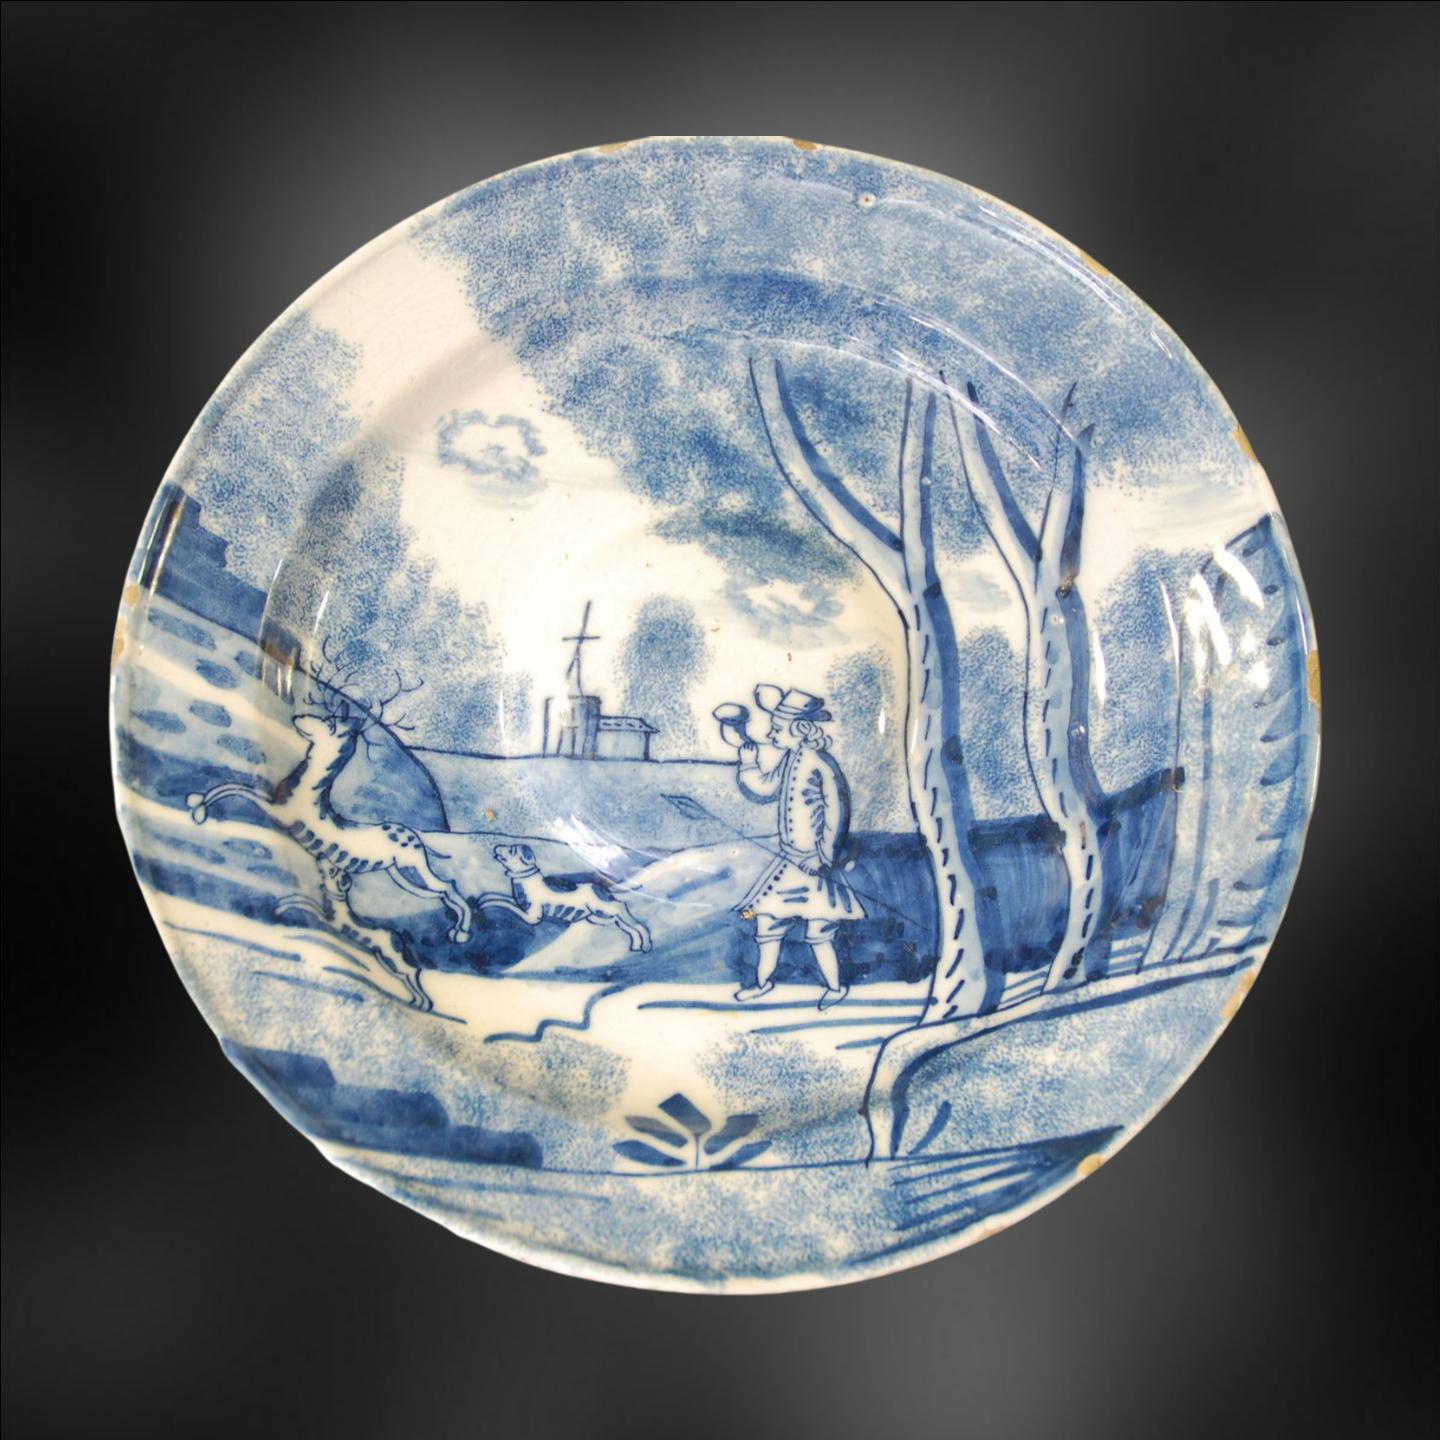 Zinnglasierte Schale aus Steingut (Delfter Keramik) in ungewöhnlicher Form; kunstvoll bemalt mit einem Mann, der einen Hirsch jagt. Wahrscheinlich London, vielleicht auch Bristol. Wahrscheinlich die Servierplatte für eine große Kanne.

Die englische